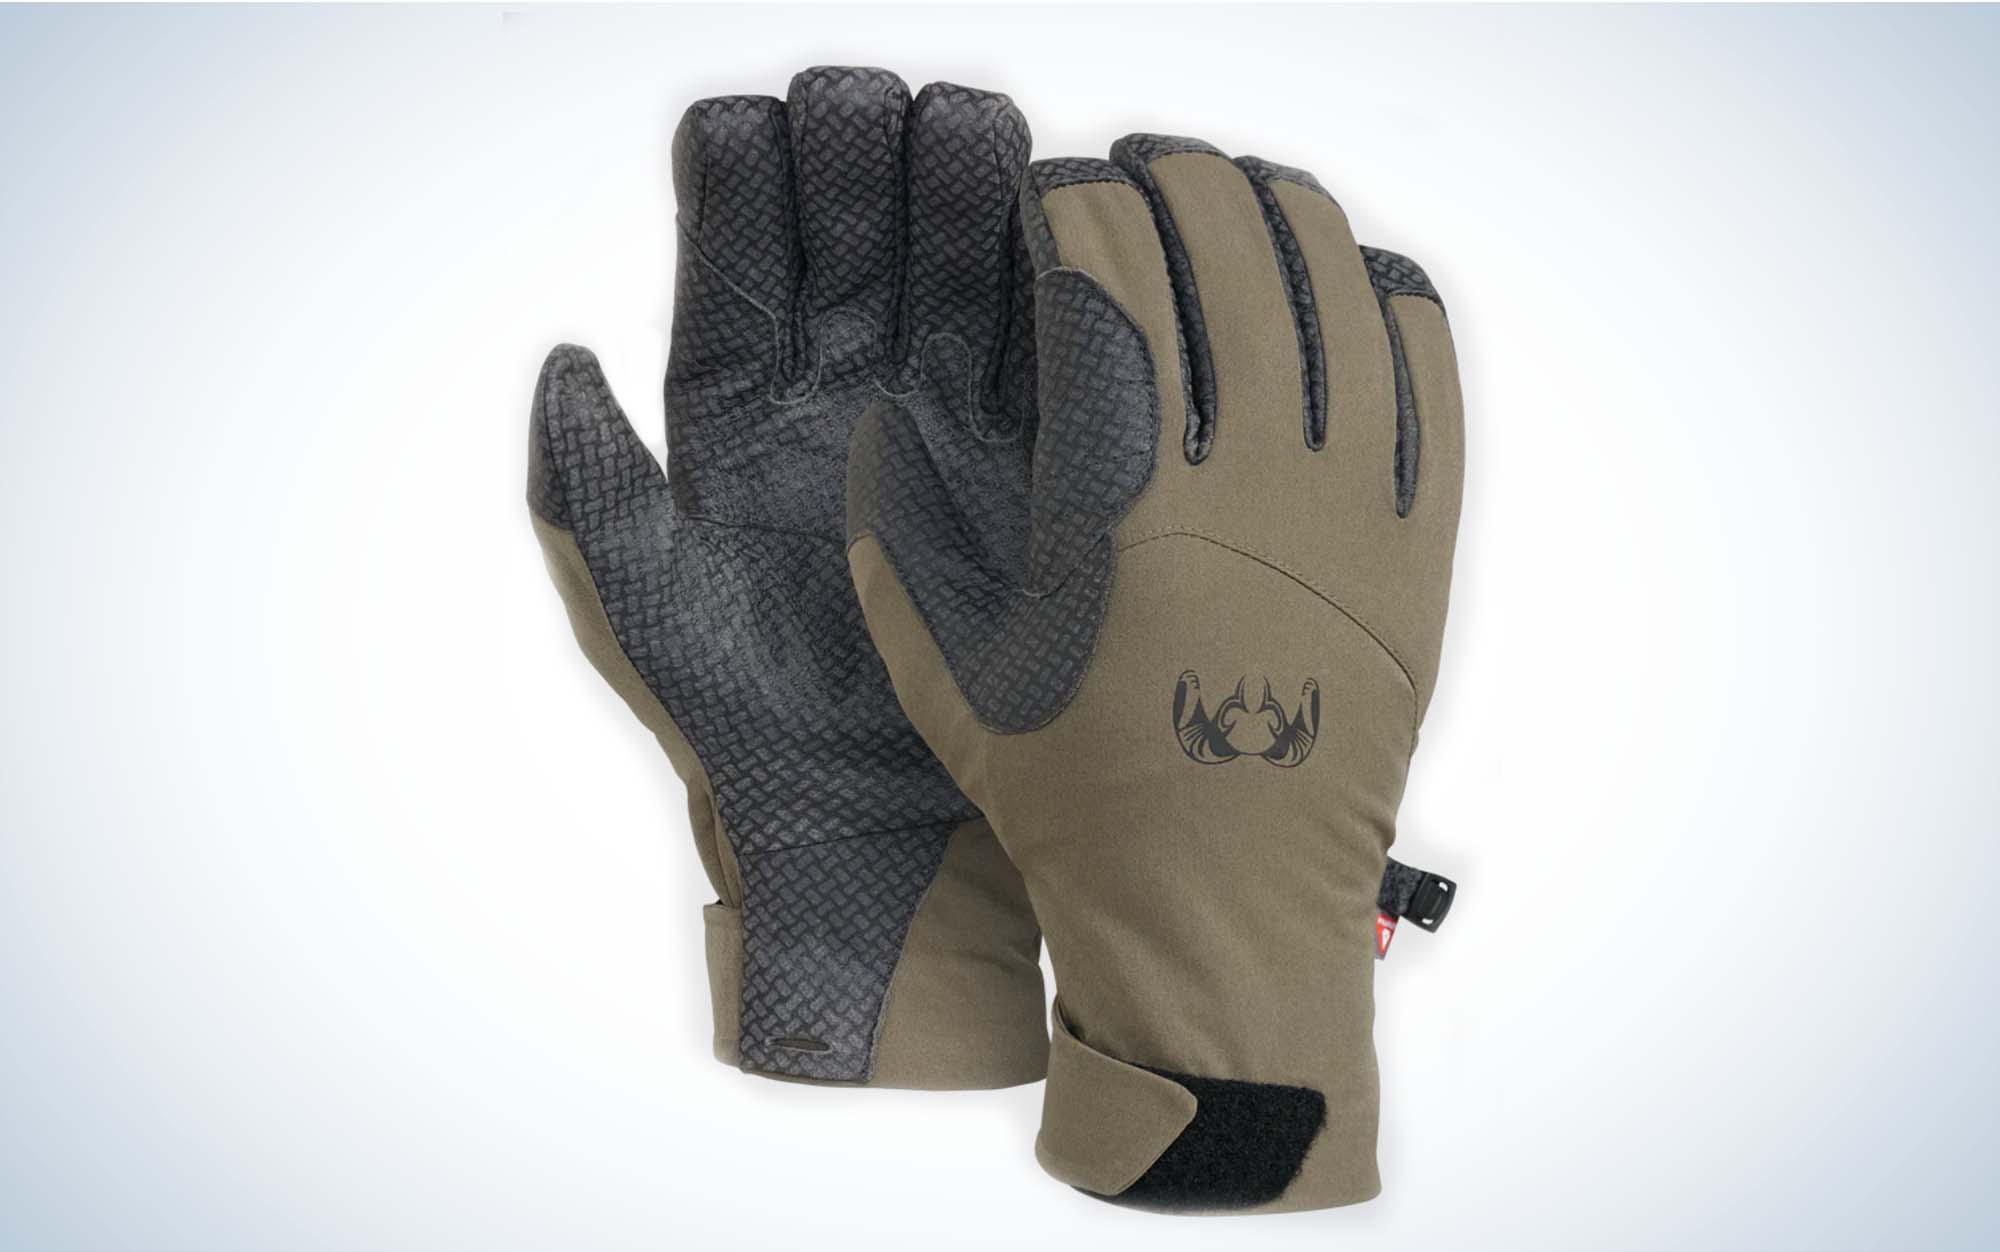 Kuiu Yukon hunting glove